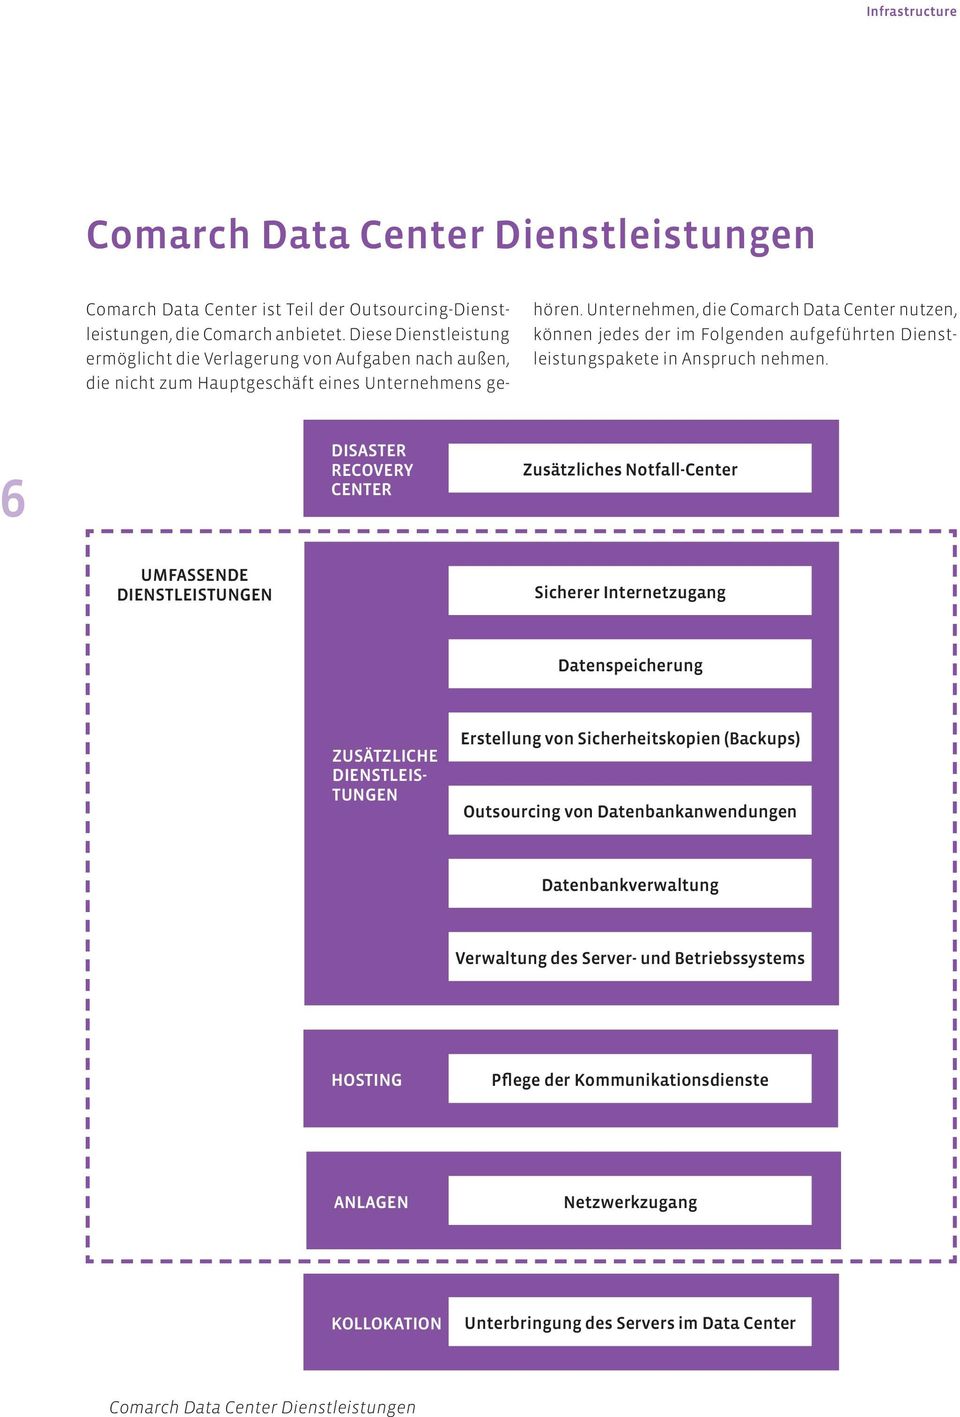 Unternehmen, die Comarch Data Center nutzen, können jedes der im Folgenden aufgeführten Dienstleistungspakete in Anspruch nehmen.